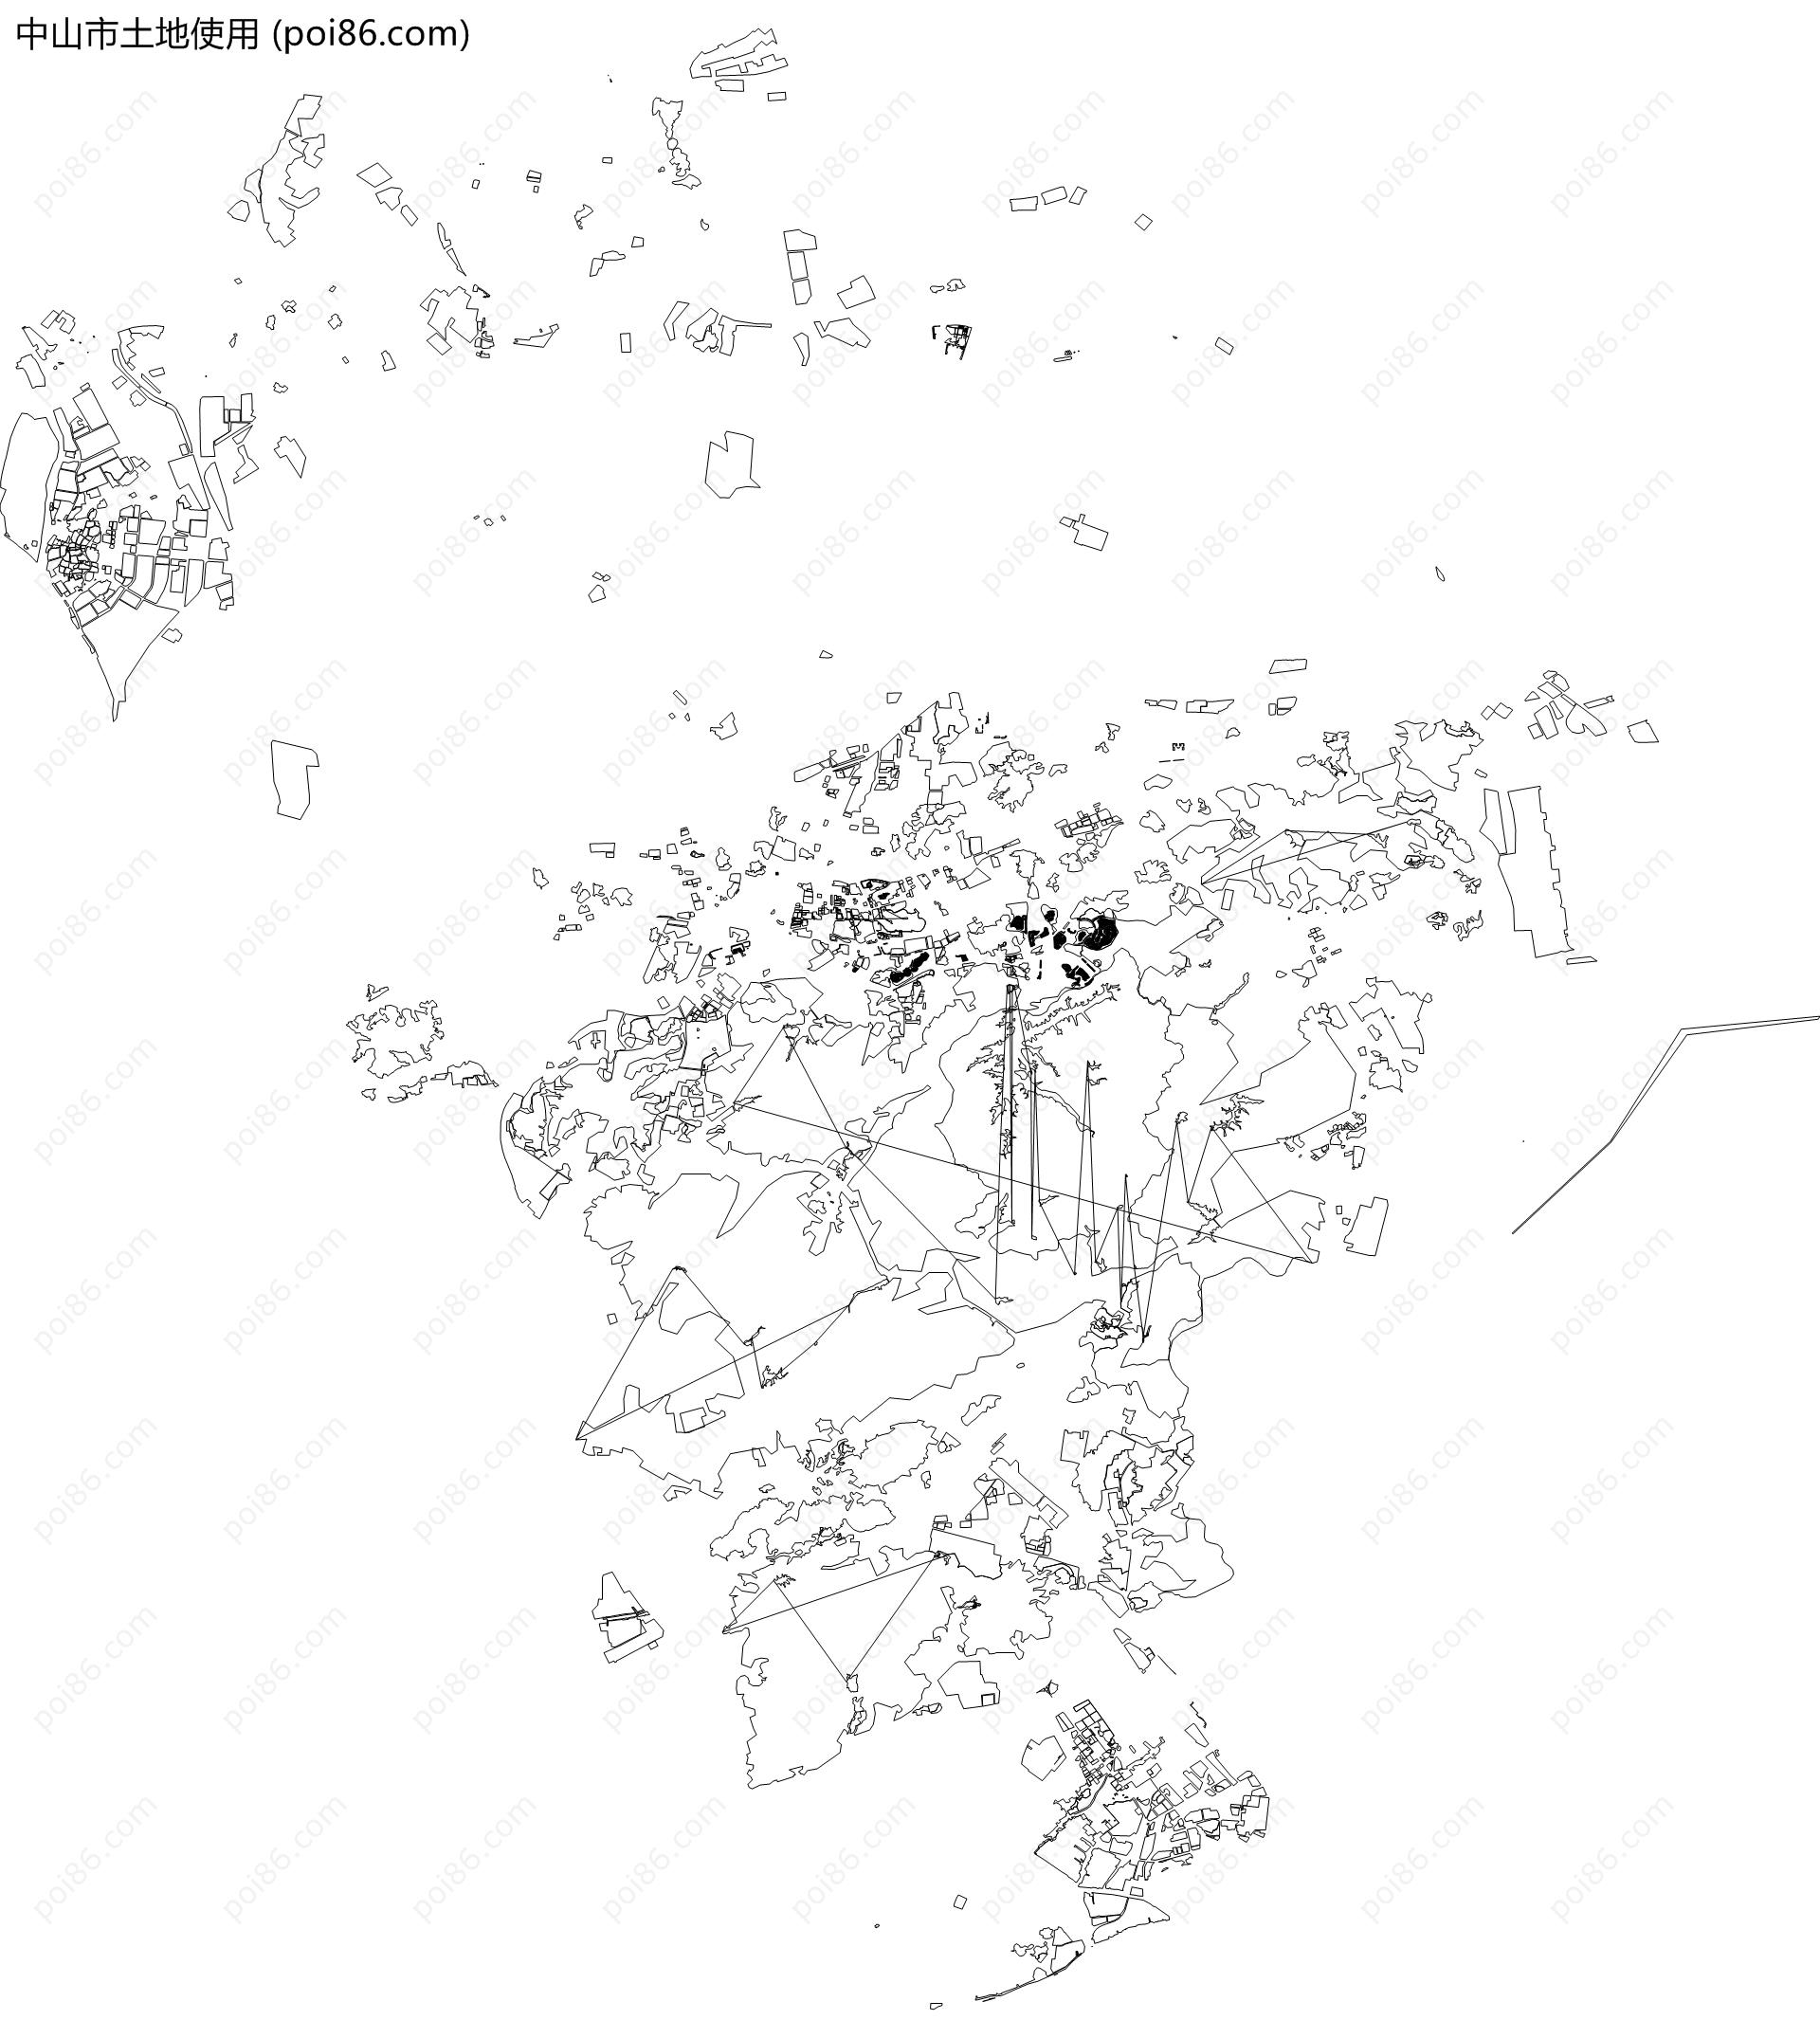 中山市土地使用地图